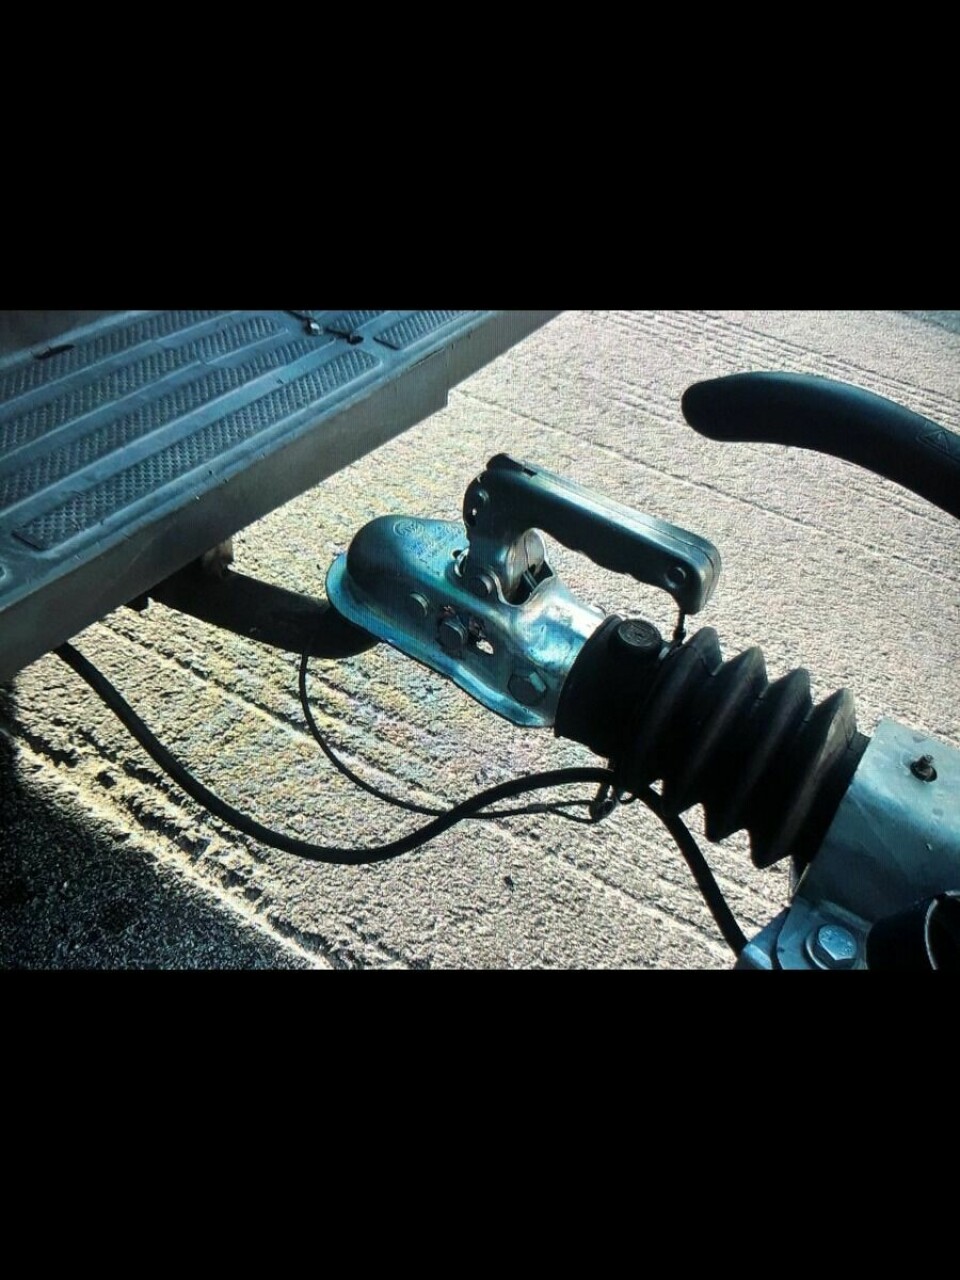 ULOVLIG: Denne lyskoblinga mellom henger og bil viste seg å være helt ulovlig, ved nærmere ettersyn. Foto: Statens vegvesen